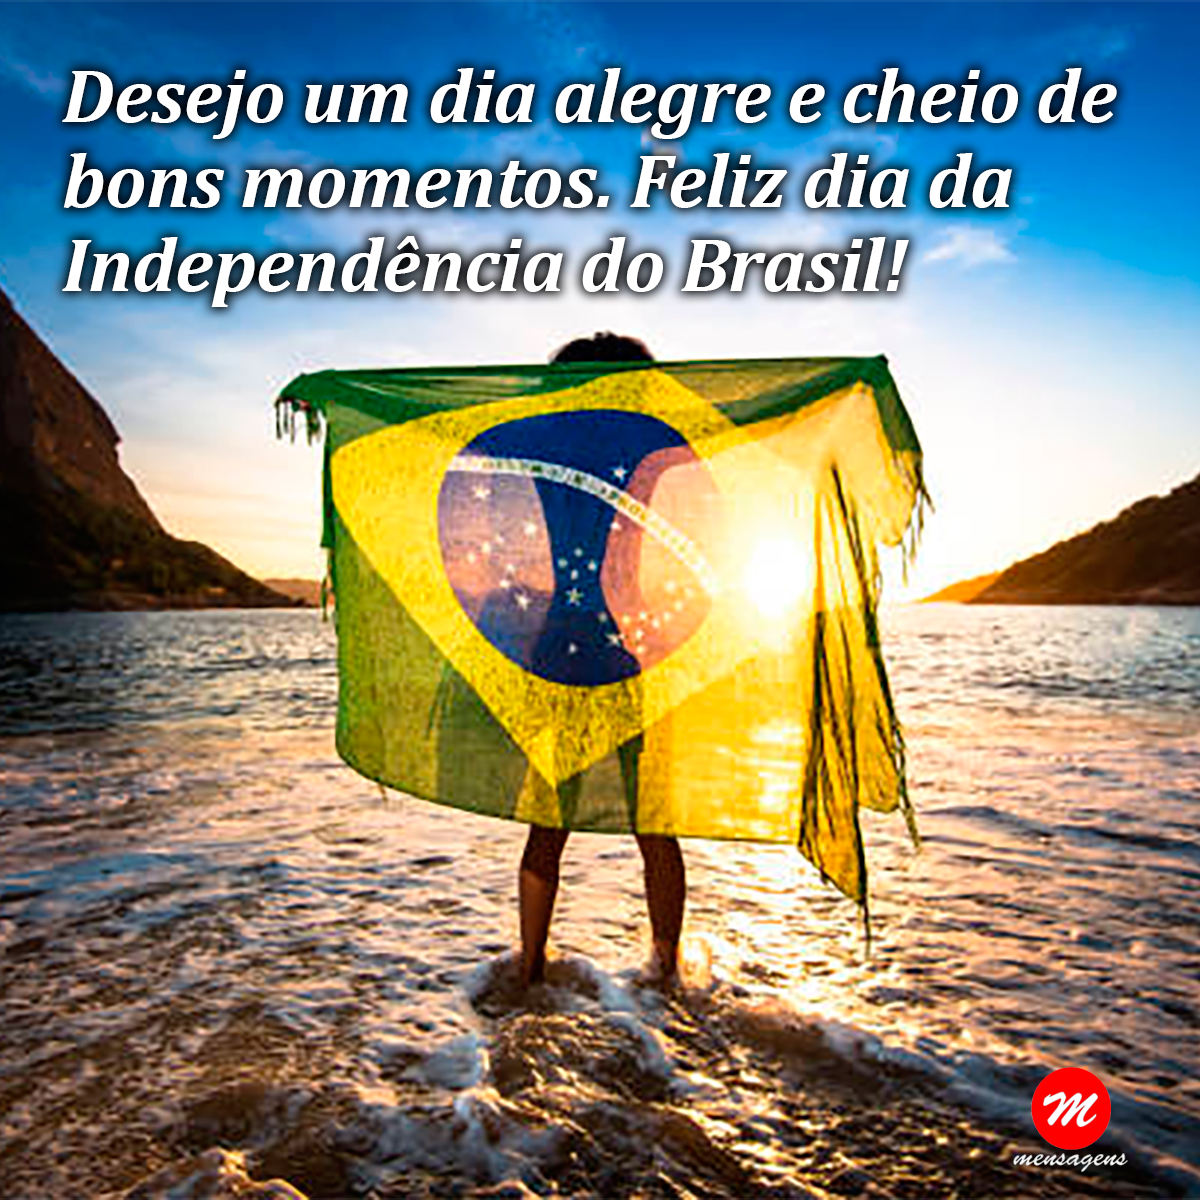 Mensagem de bom dia da independência do Brasil: 